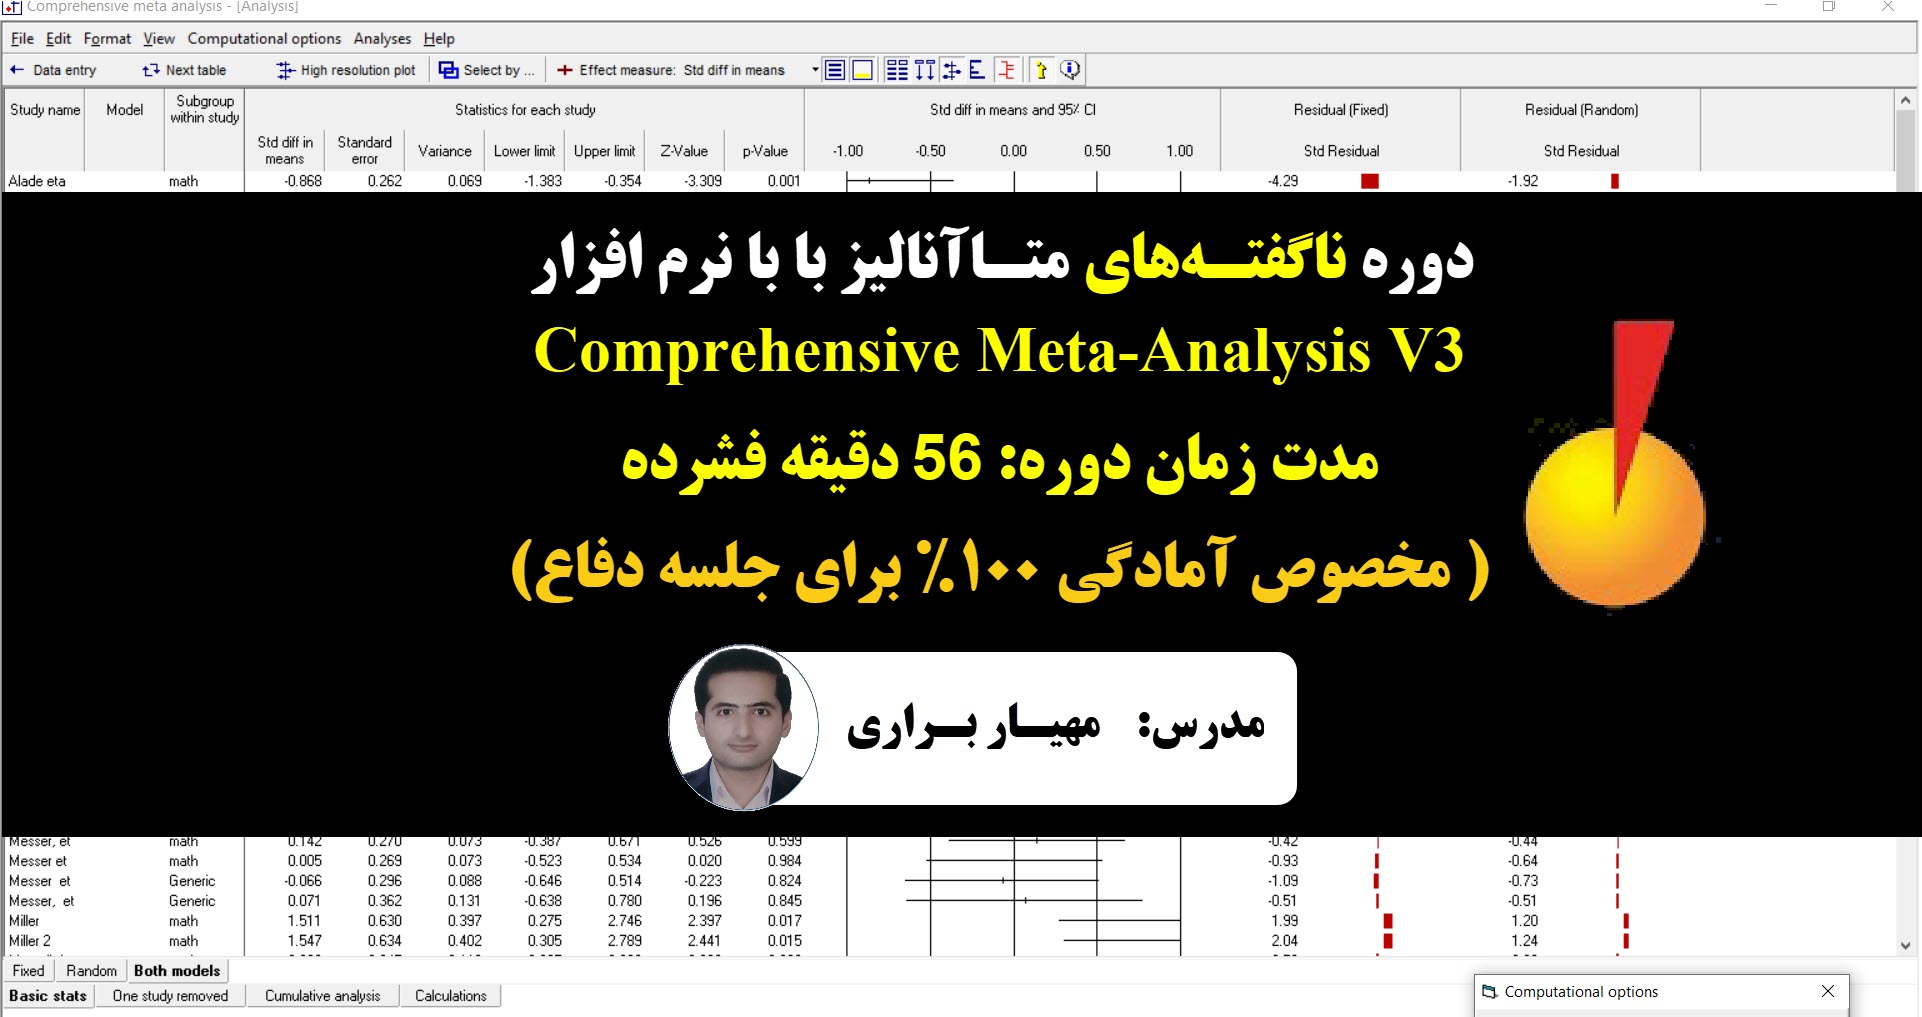 کارگاه آموزش روش متاآنالیز فراتحلیل با نرم افزار cma ,دانلود نرم افزار comprehensive meta-analysis , کرک نرم افزار cma